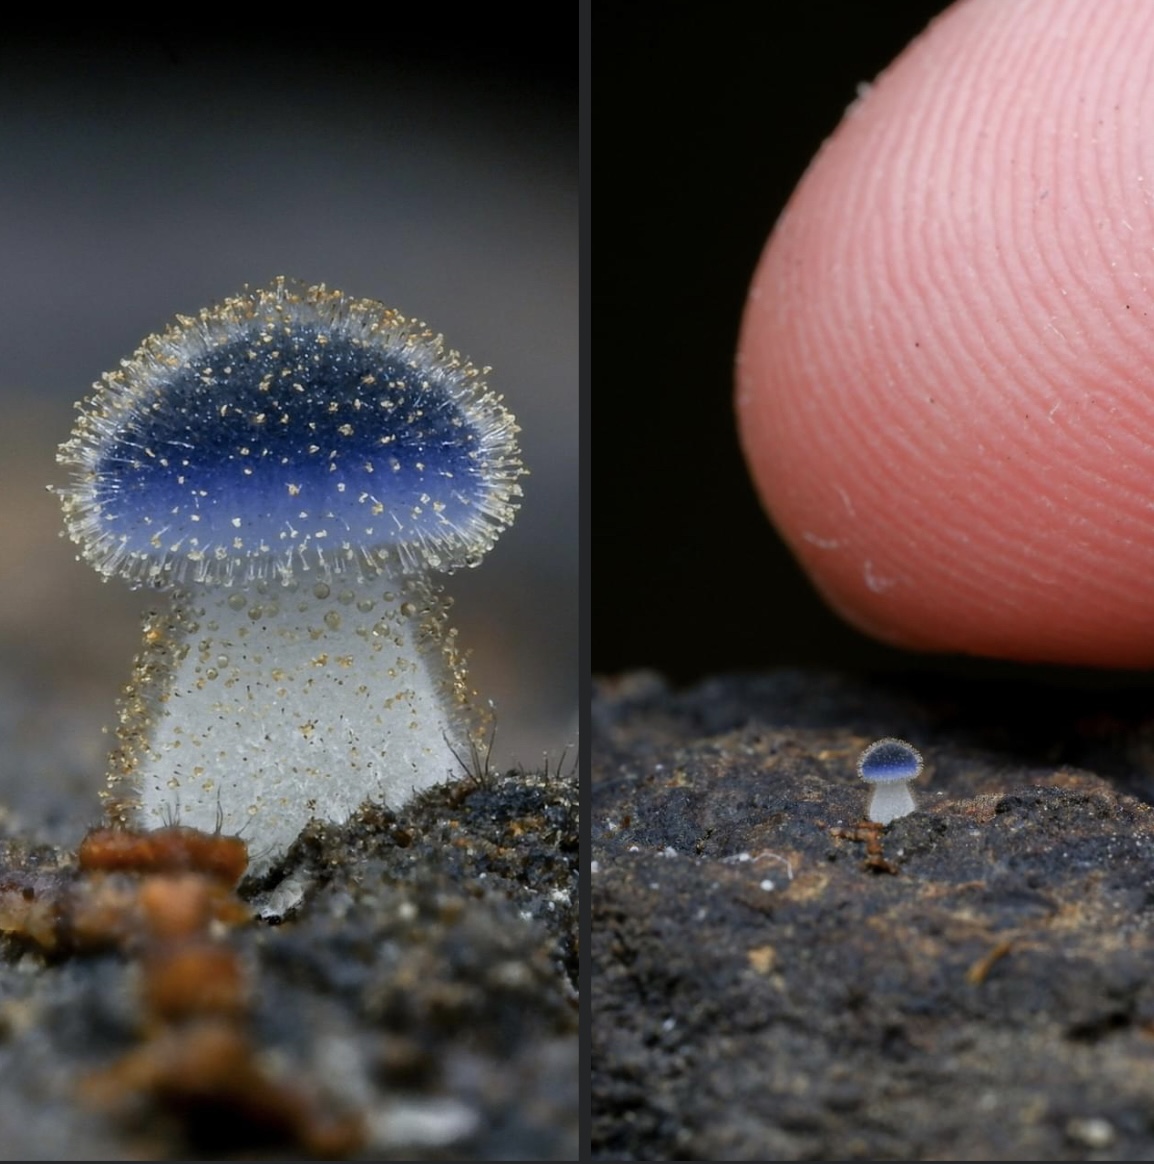 Tiny weird mushroom v finger Blank Meme Template